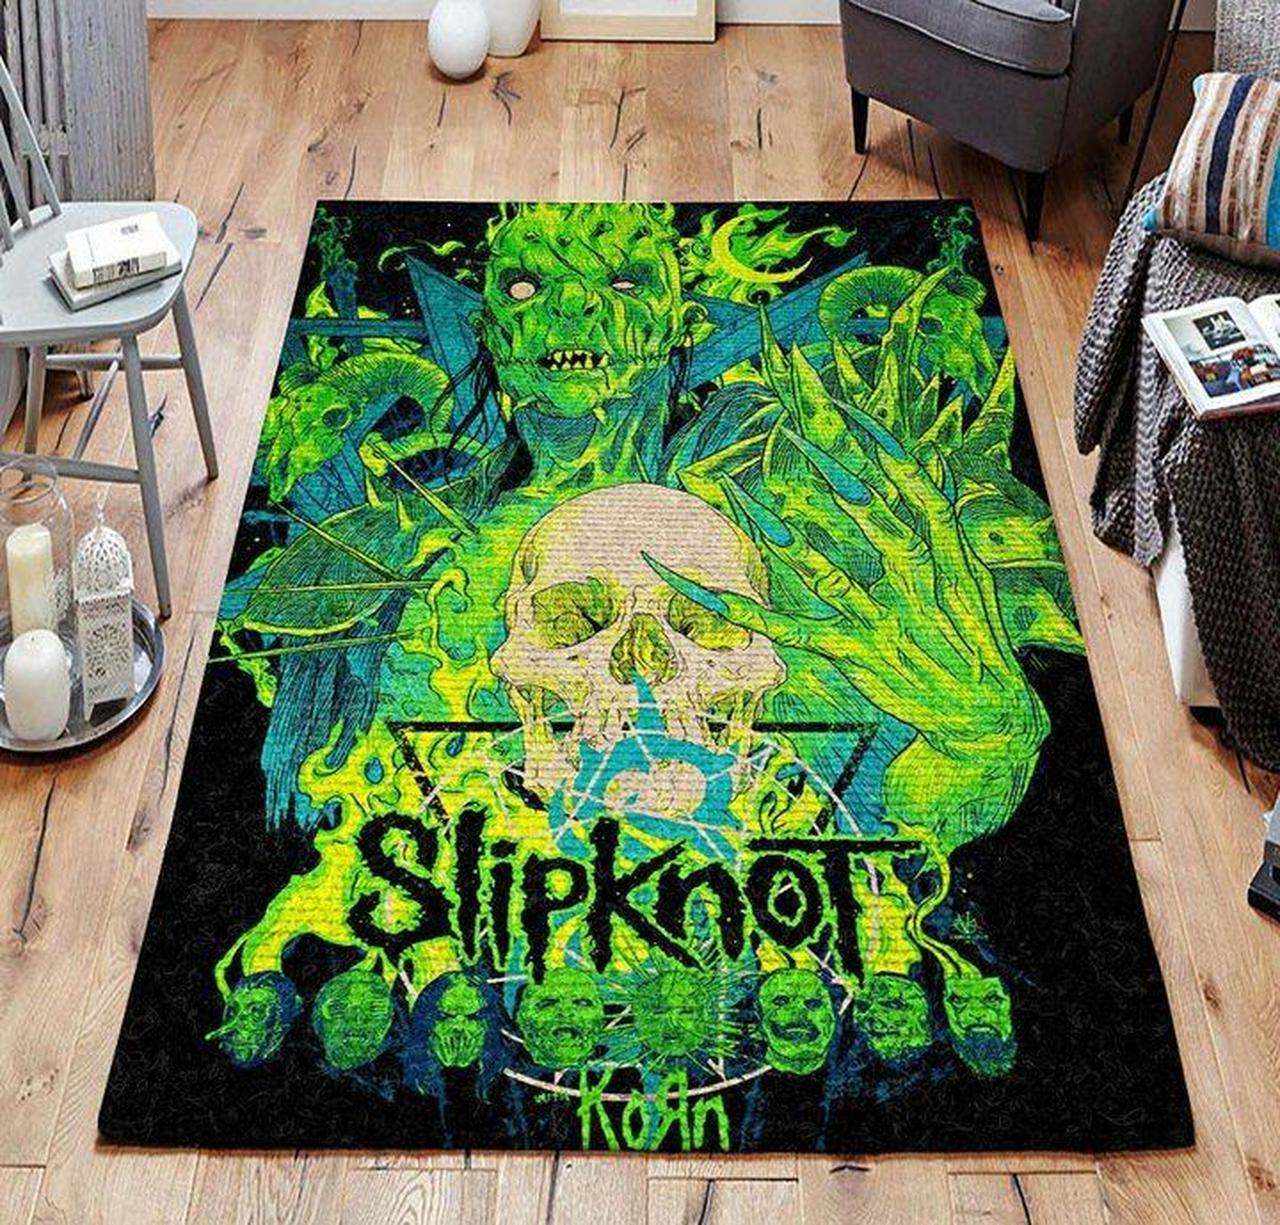 Slipknot Music Area Rugs Living Room Carpet FN251222 Local Brands Floor Decor